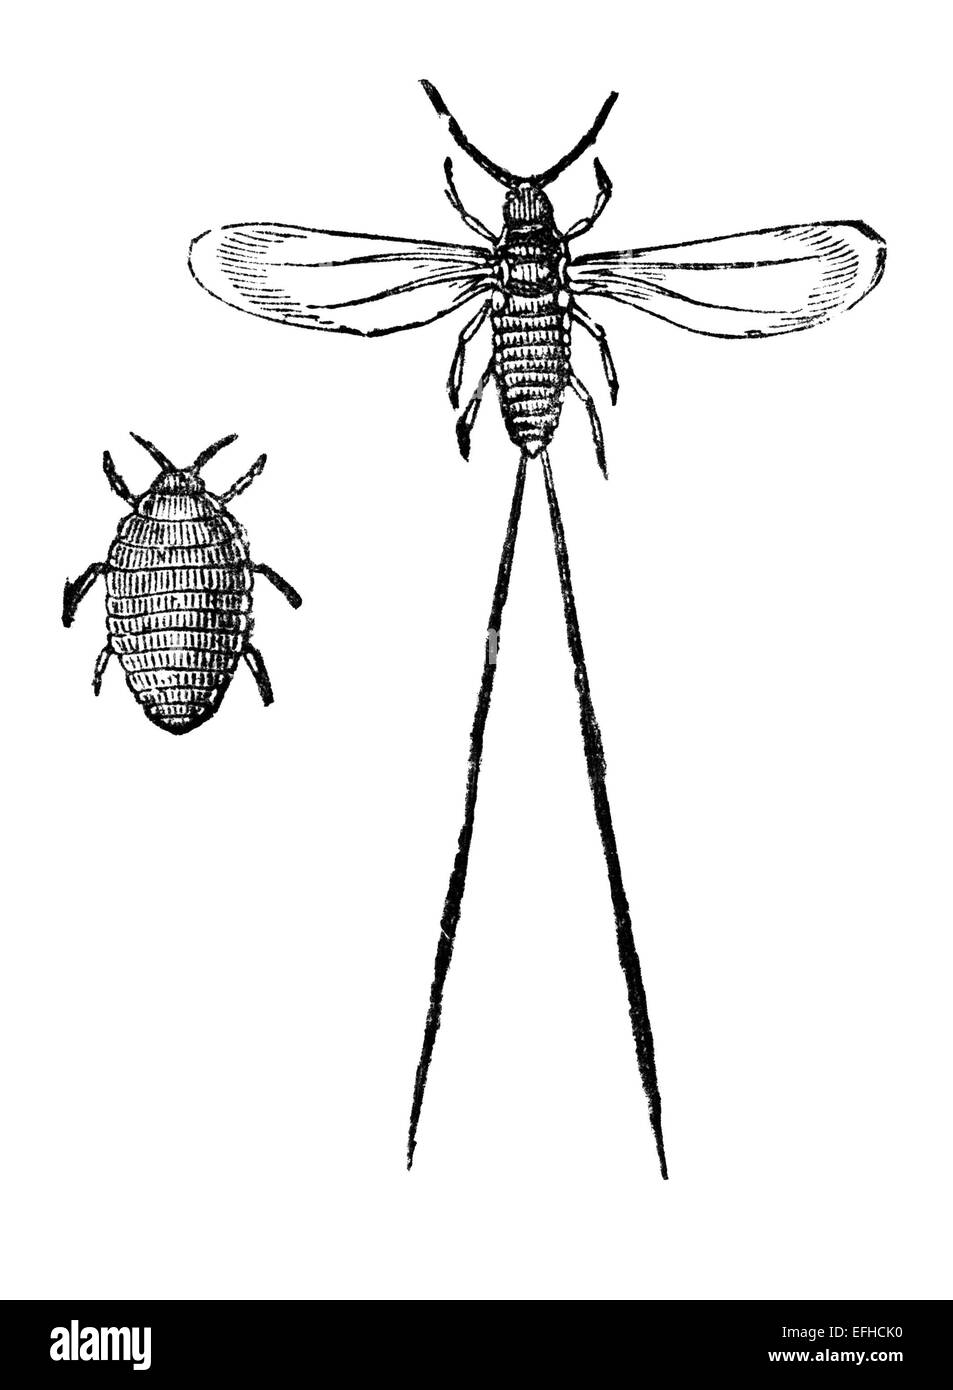 Victorian grabado de un bug de la cochinilla. Imagen restaurada digitalmente desde mediados del siglo XIX, una enciclopedia. Foto de stock